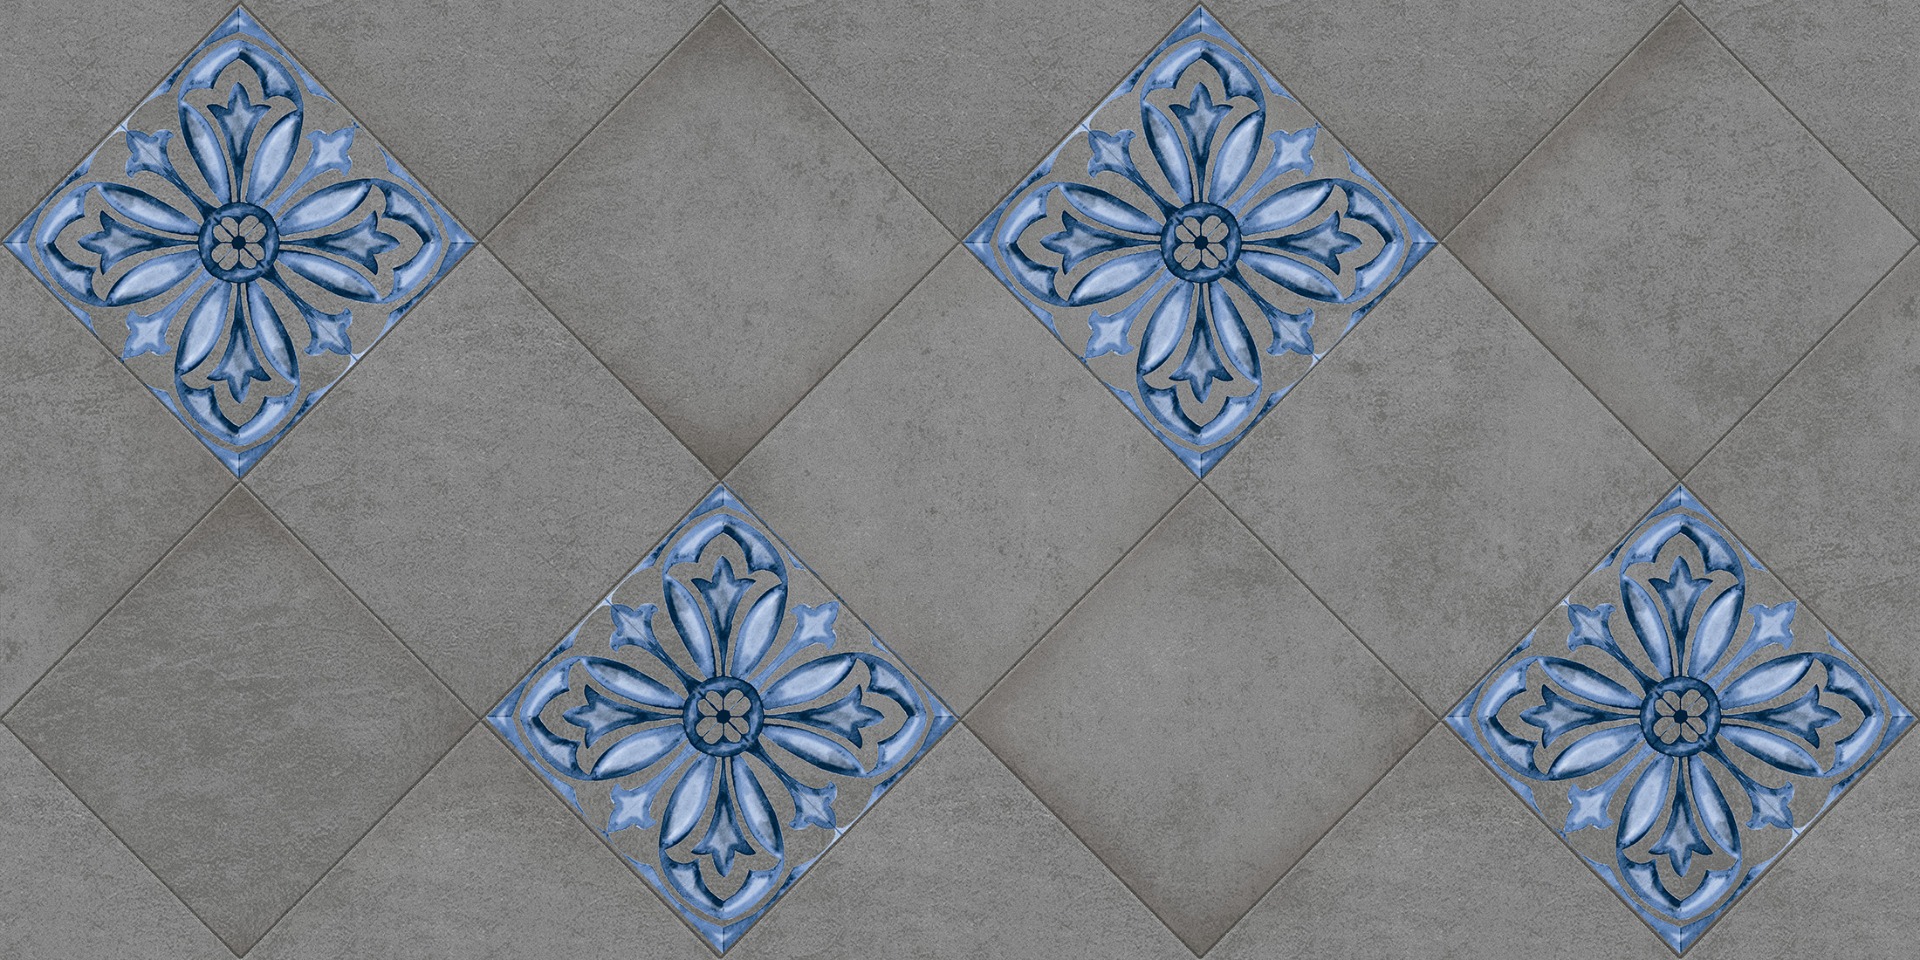 Vitrified Tiles for Bathroom Tiles, Living Room Tiles, Bedroom Tiles, Accent Tiles, Hospital Tiles, High Traffic Tiles, Bar/Restaurant, Commercial/Office, School & Collages